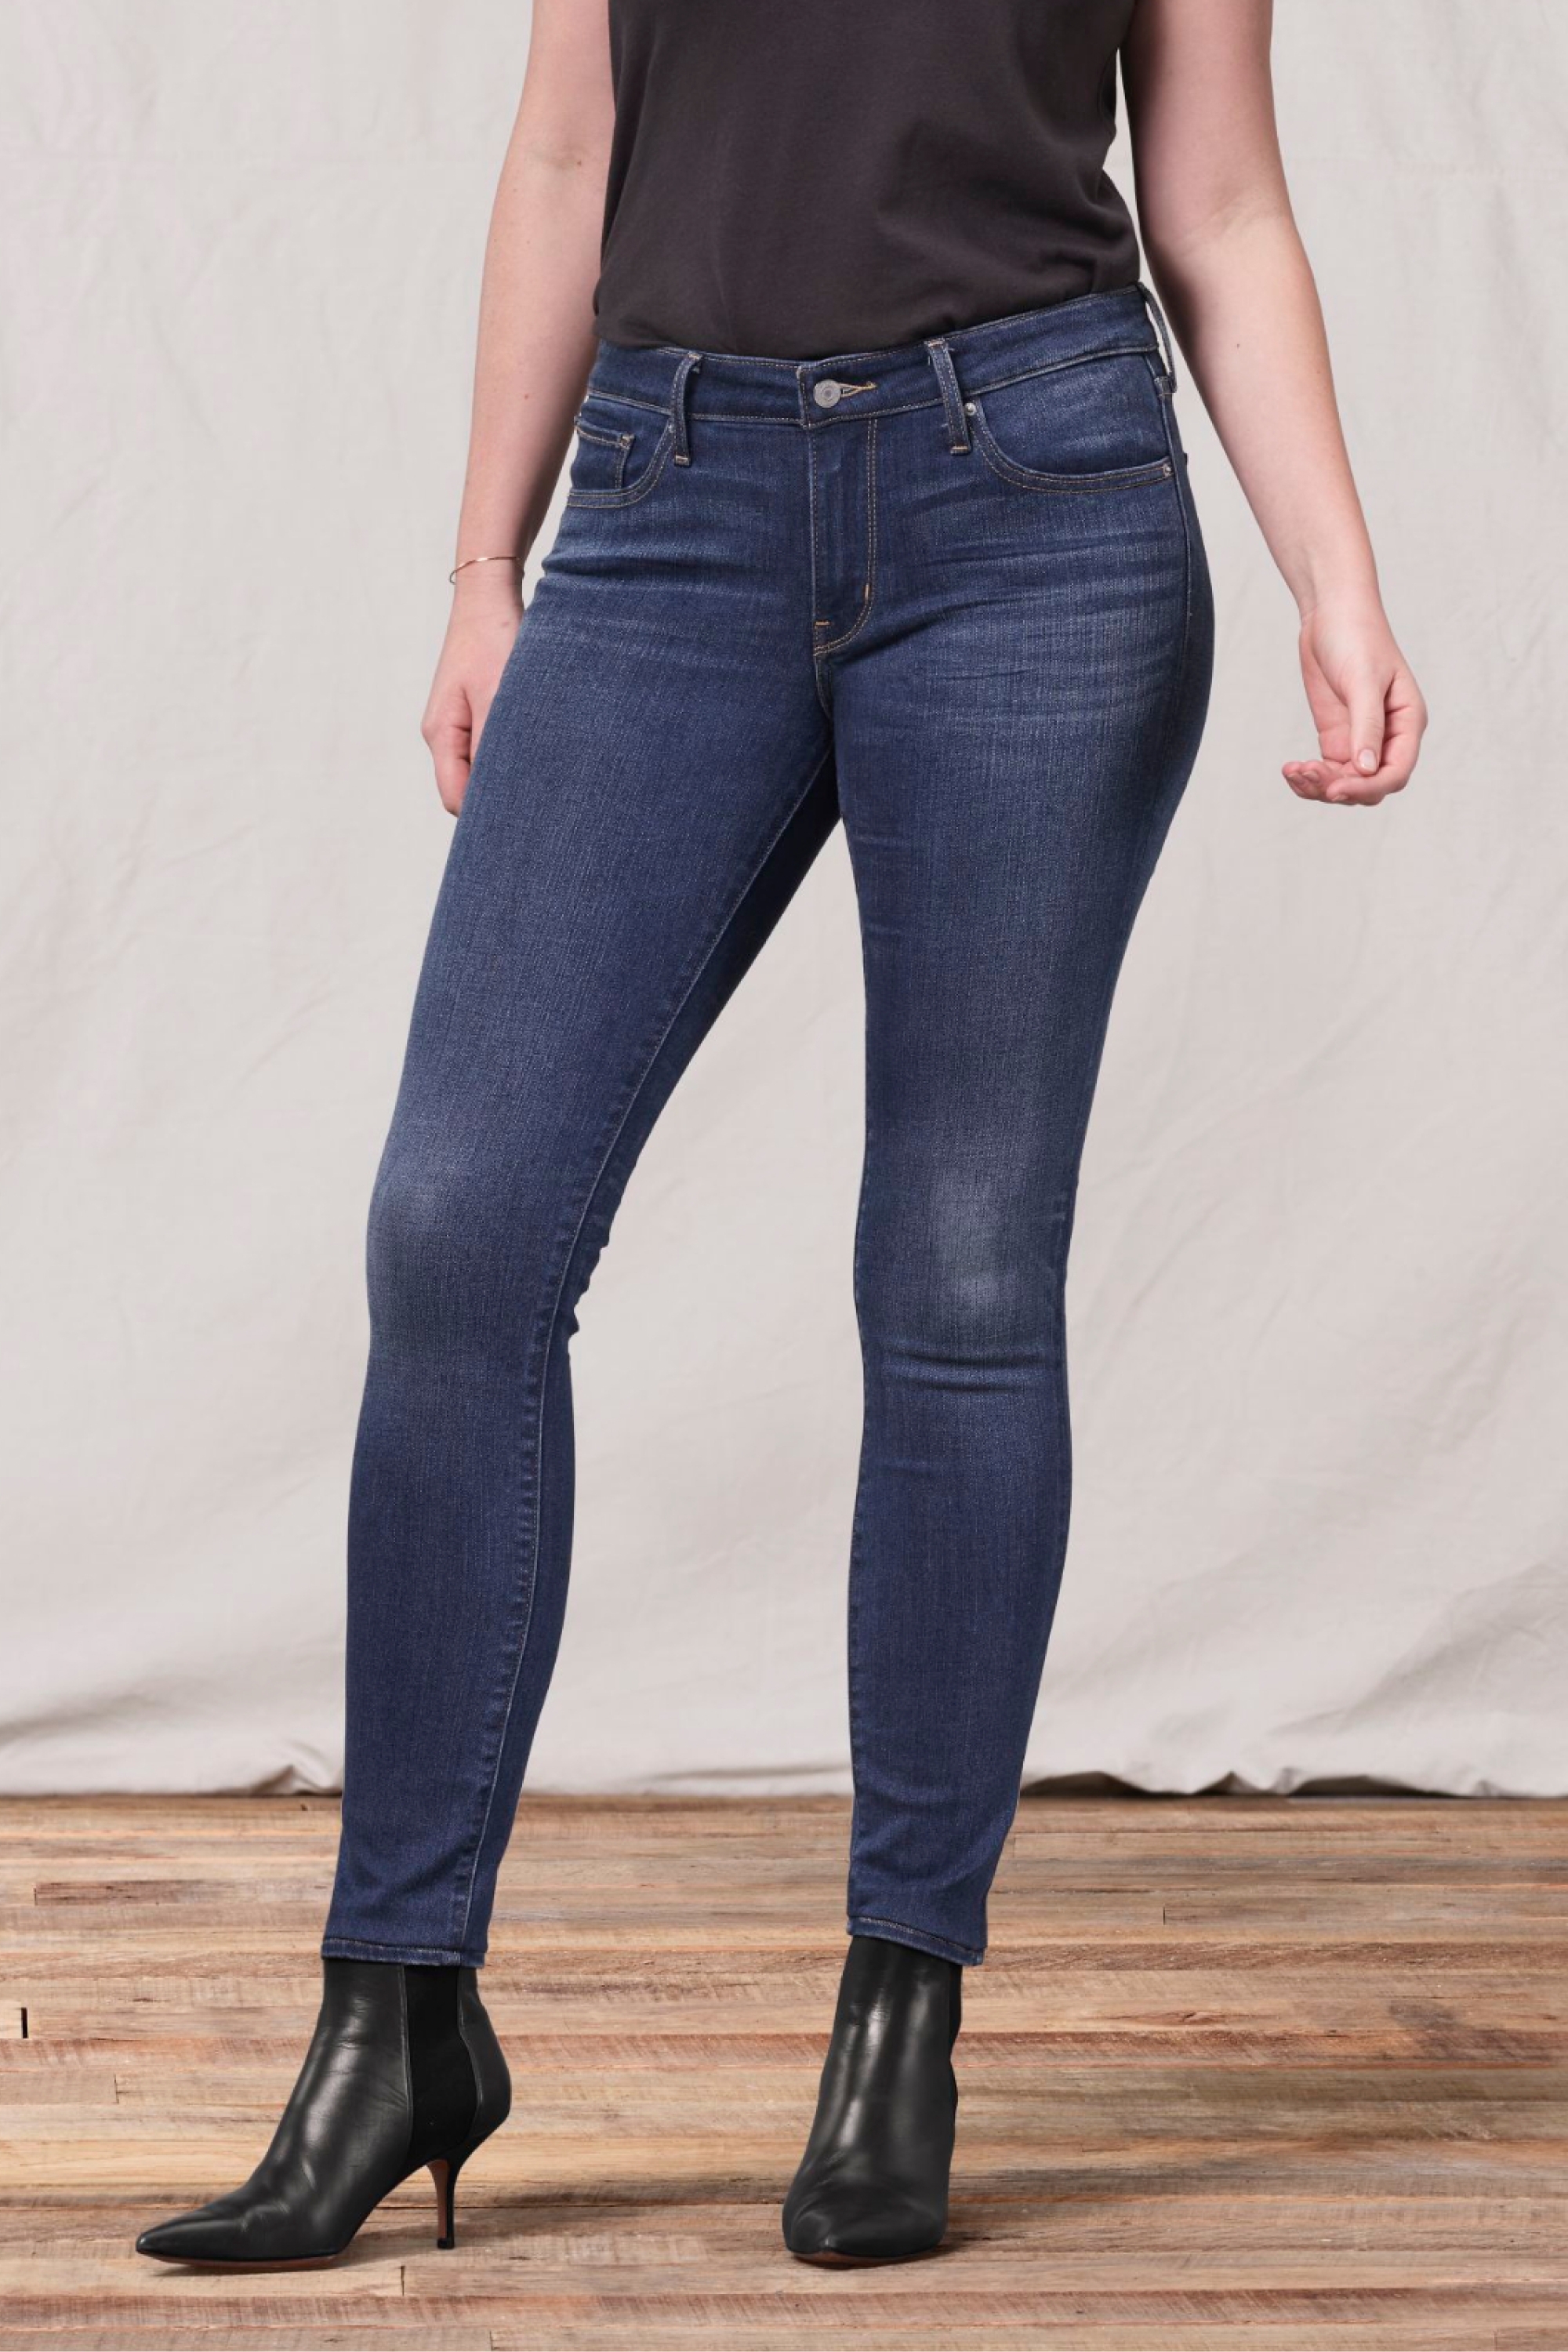 levis 511 womens jeans